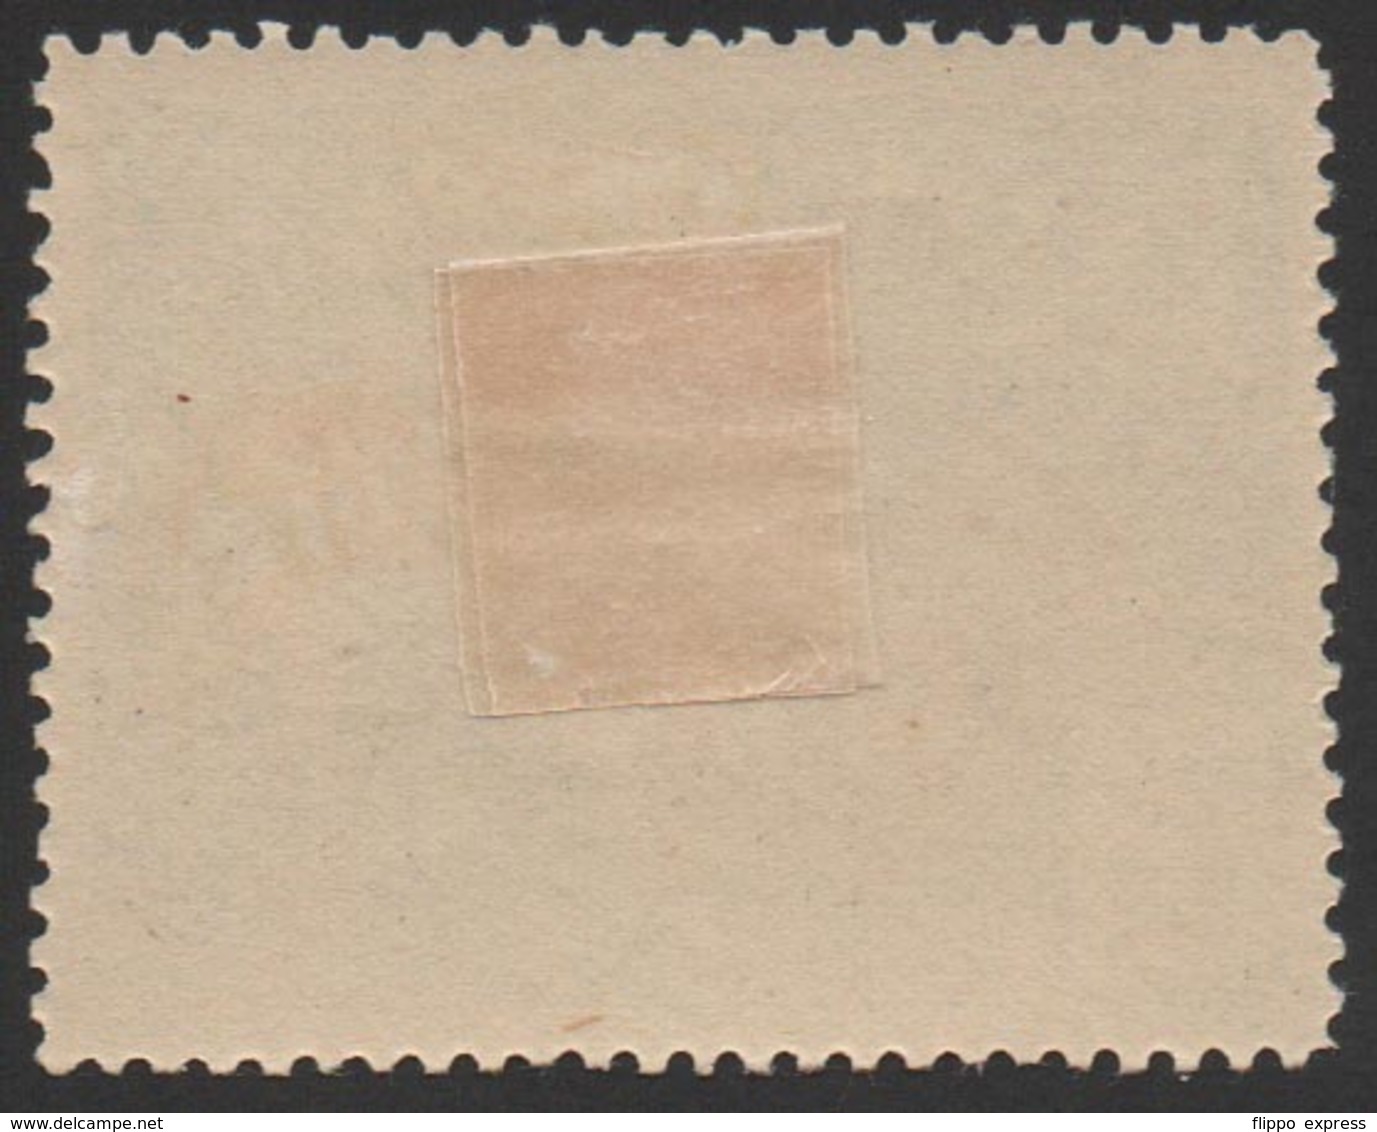 Denmark, Poster Stamp, Maerkat Nr. 4242, Mint - Lokale Uitgaven